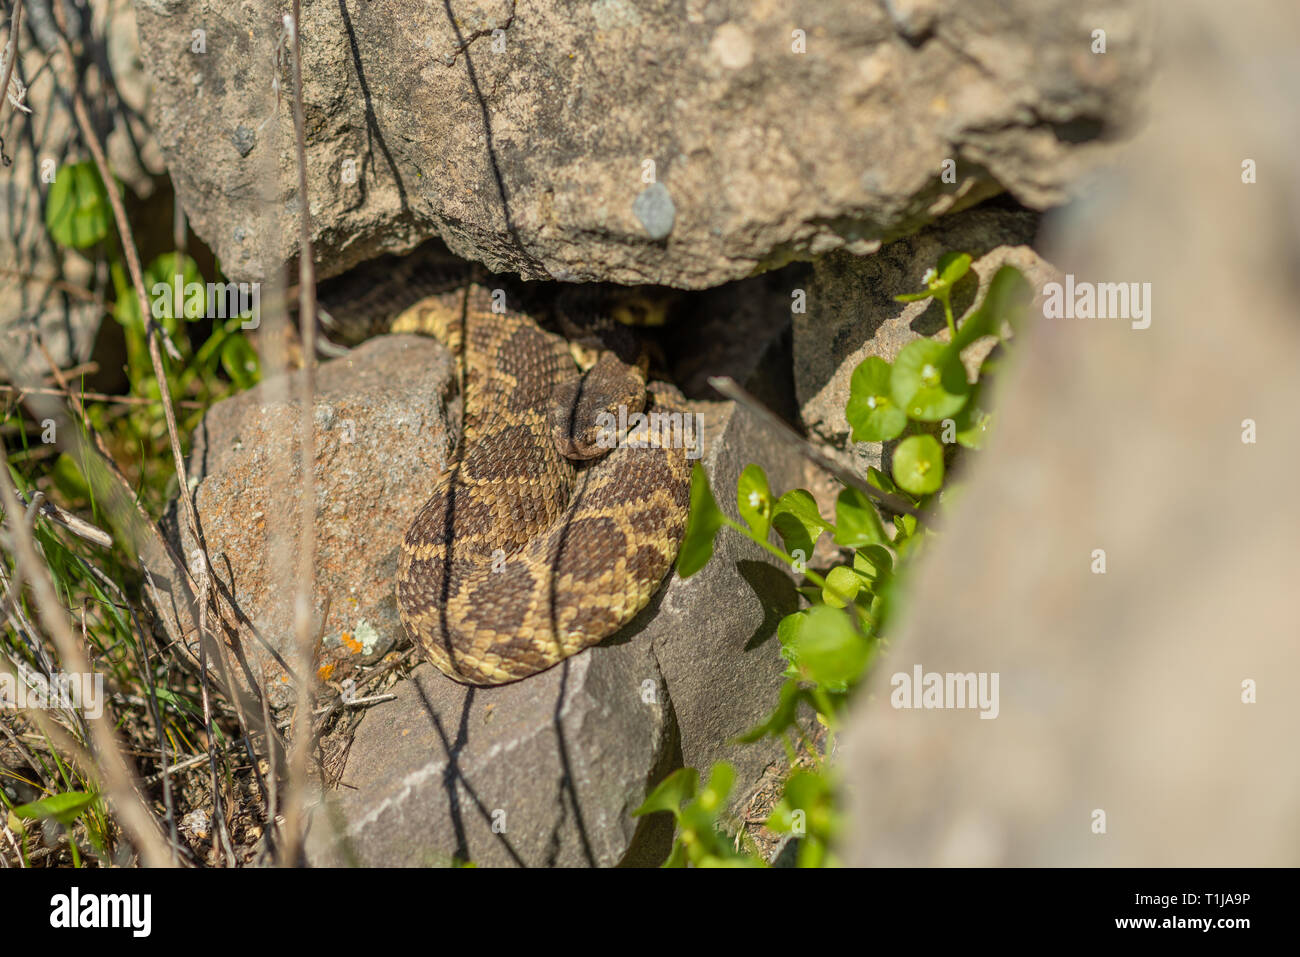 Un Pacifico settentrionale rattlesnake emerge dalla sua tana nel nord della California. Foto Stock